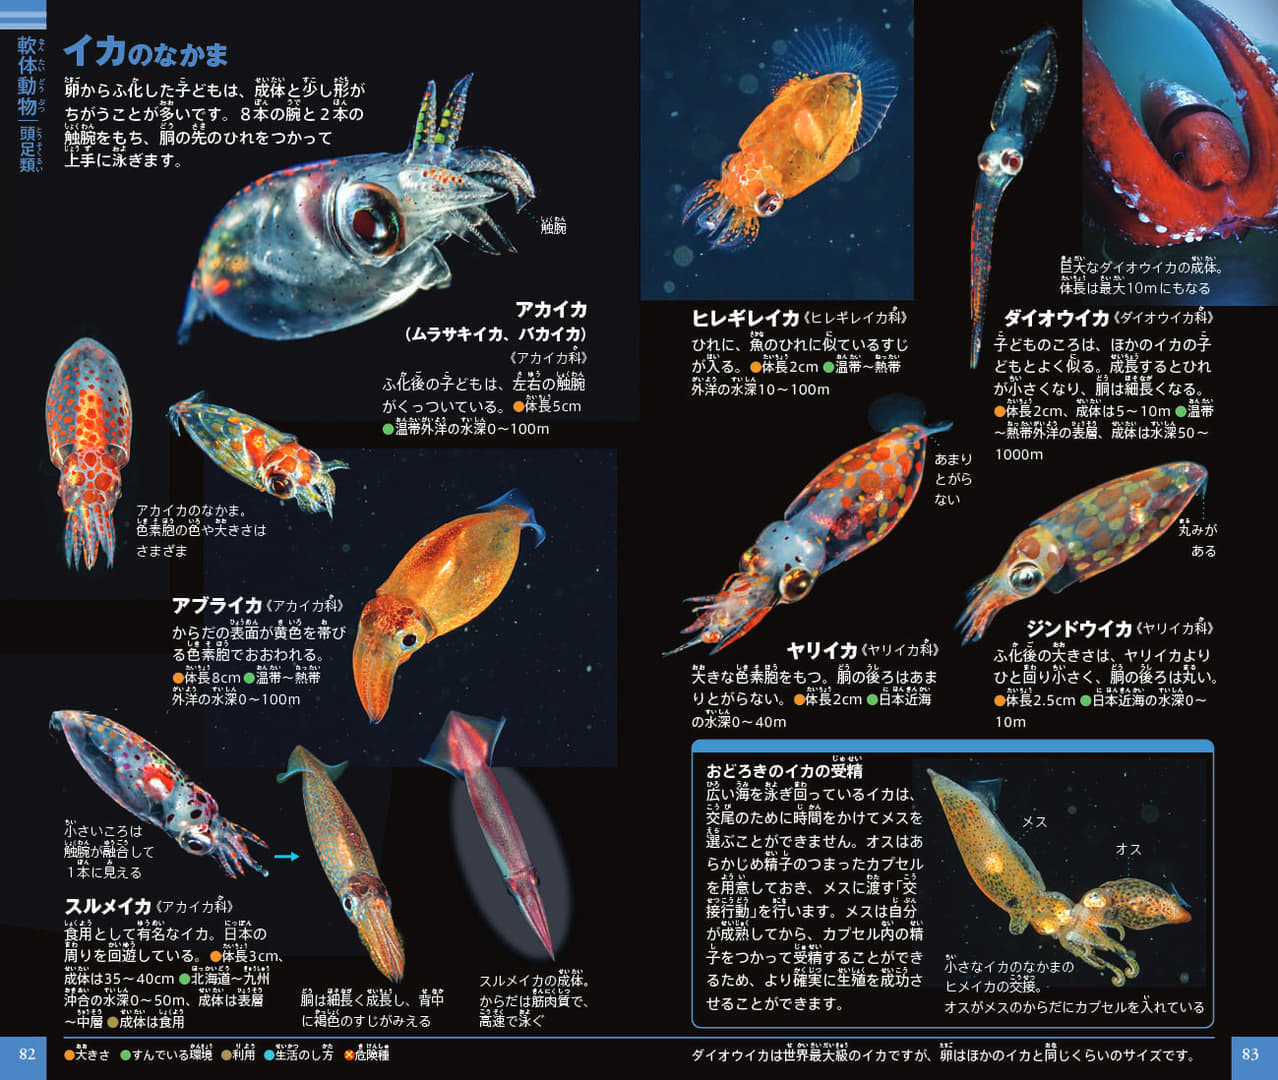 「ネオポケットシリーズ」から『プランクトン』図鑑が発売。日本初となる約500種のプランクトンが掲載
_002